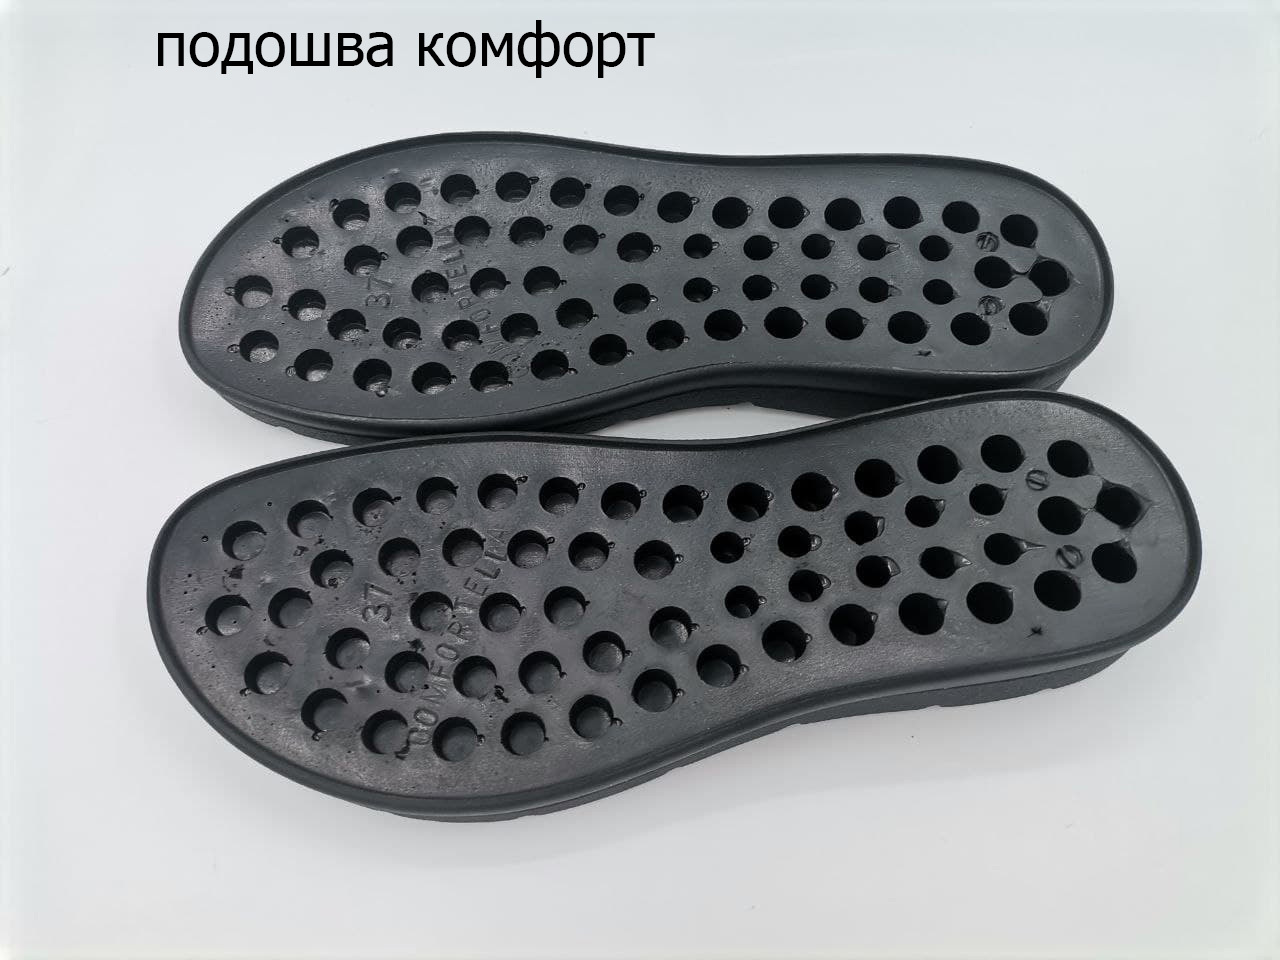 HAND MADE 💝Вязаная обувь для дома и улицы! | ВКонтакте